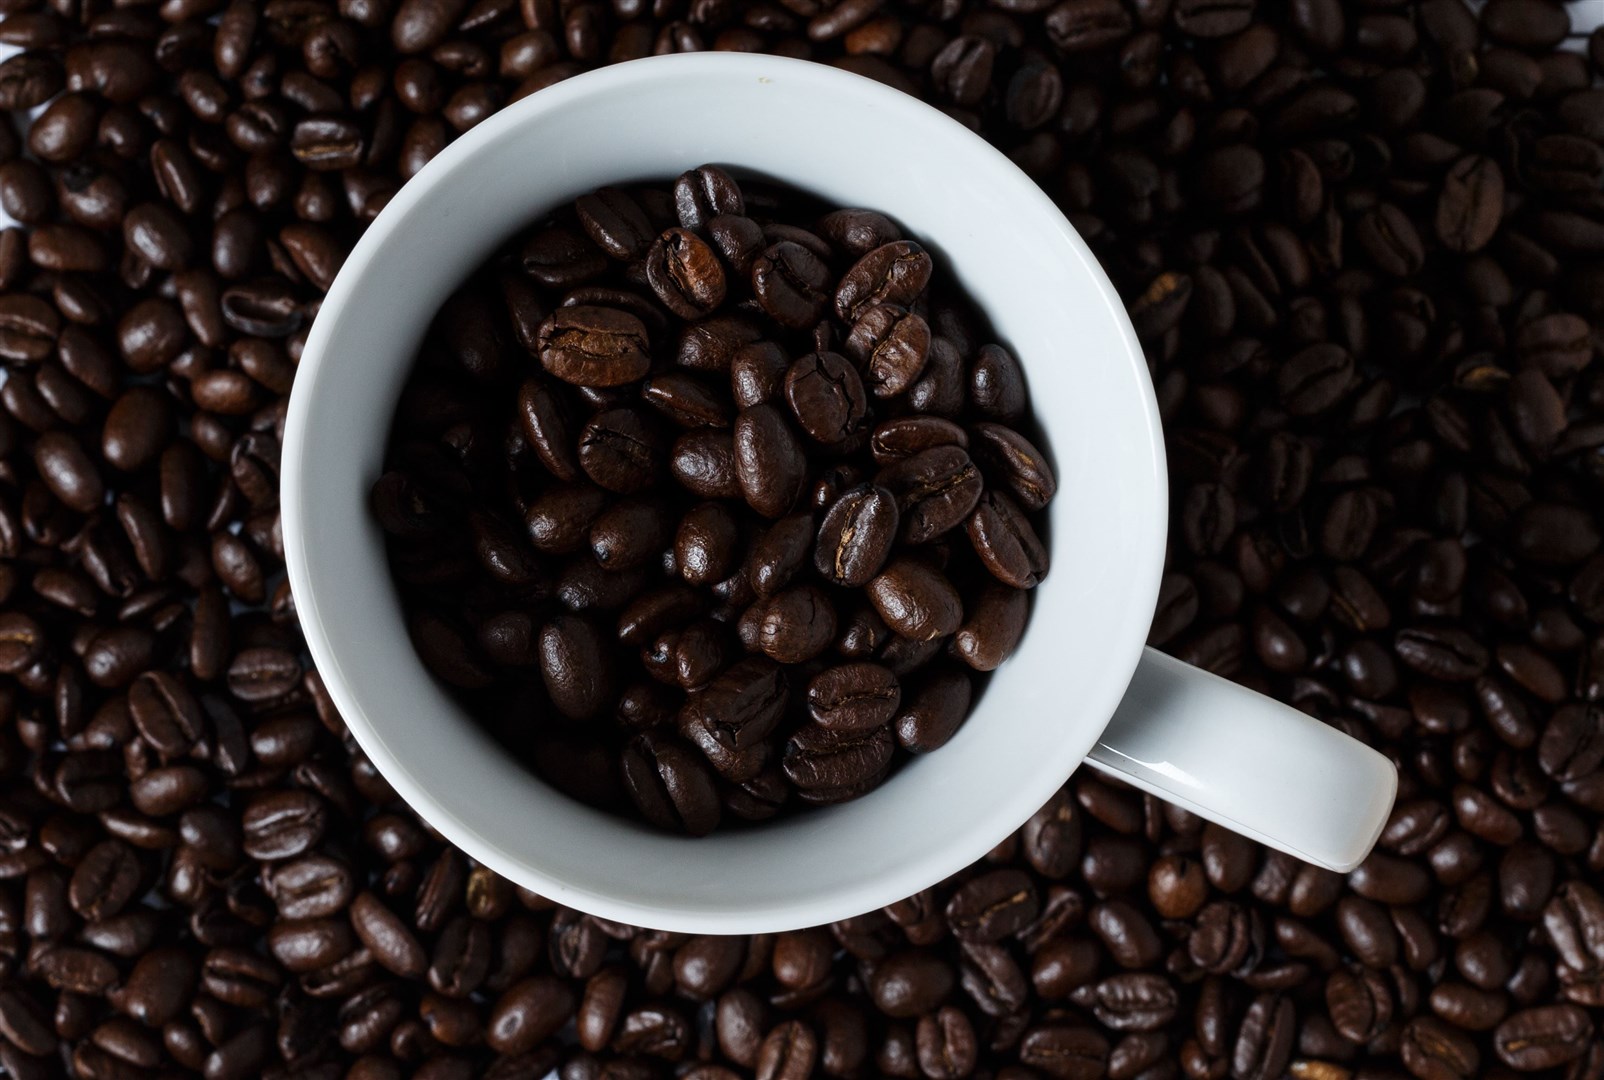 Coffee beans in a mug (John Walton/PA)